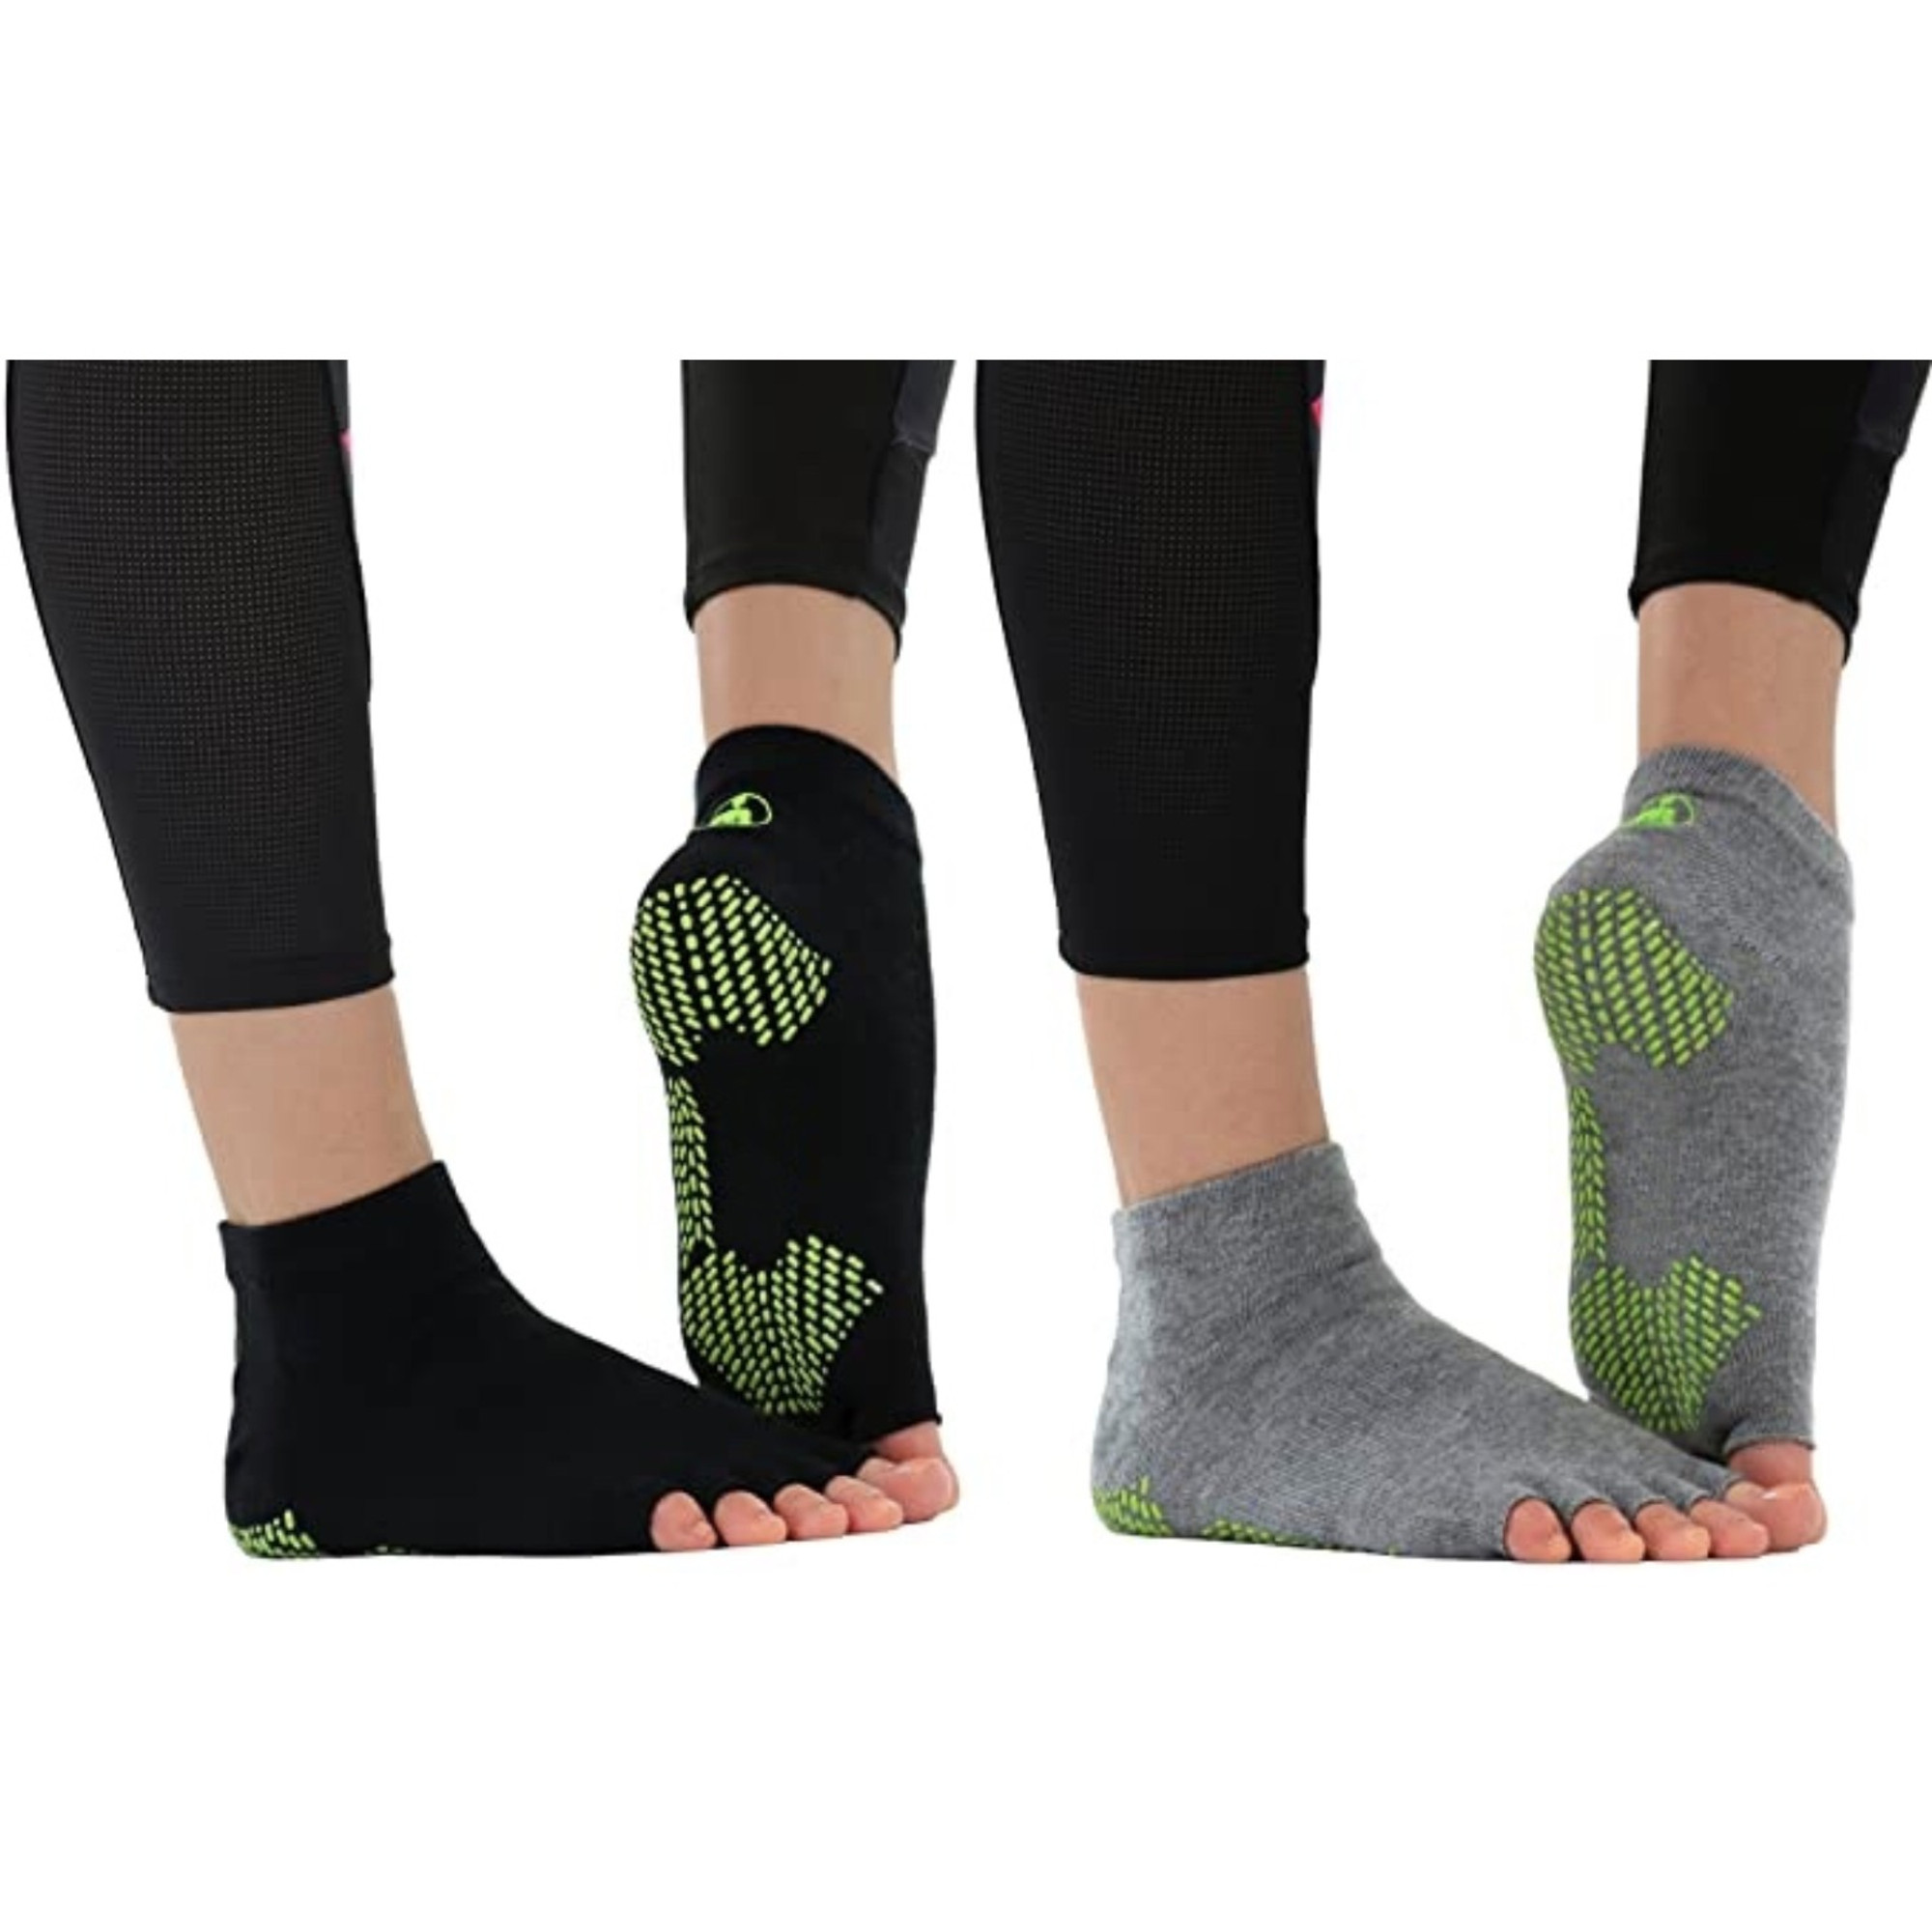 Toeless Non Slip Yoga Grip Socks Half Toe Socks for Pilates Ballet Yoga